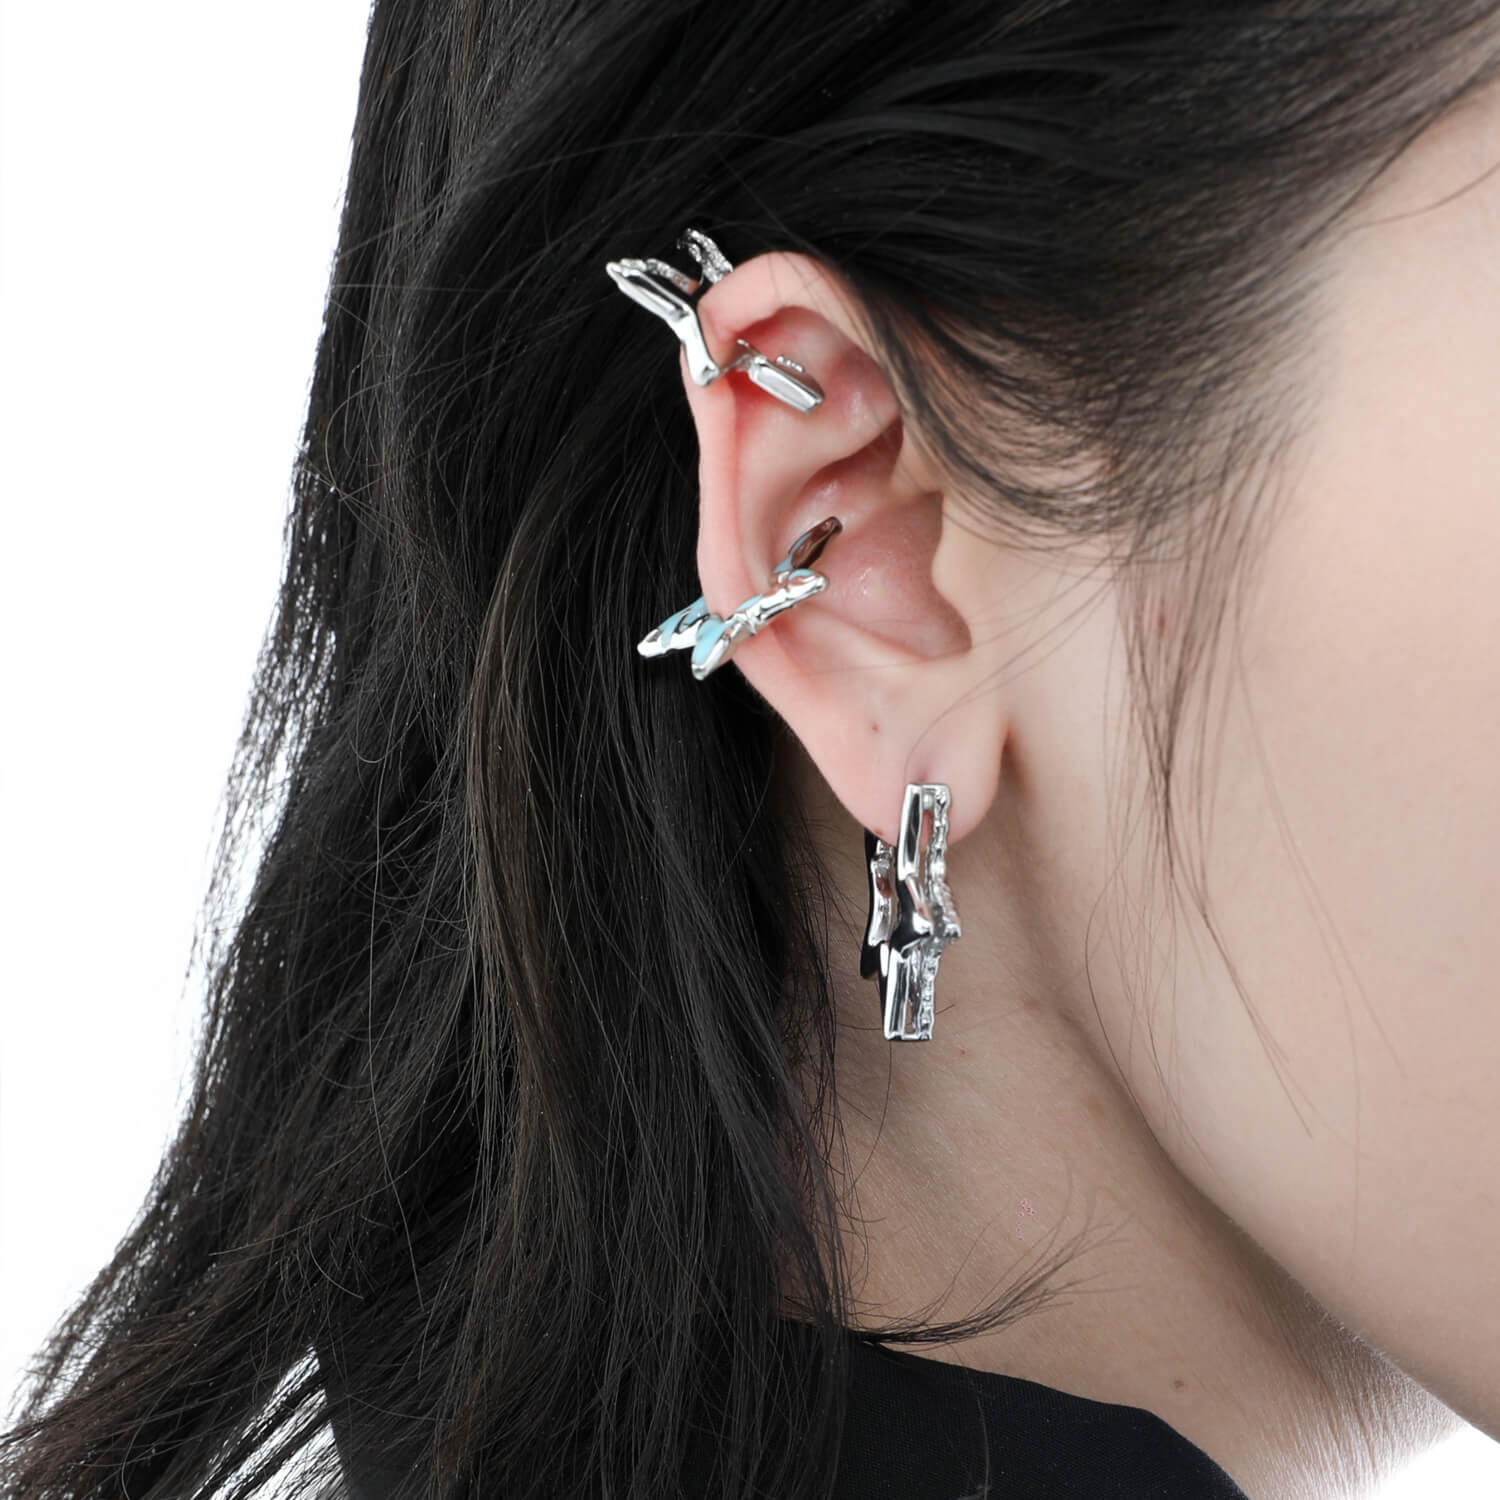 Pentagram Ear Cuff Clip-On Earrings  Buy at Khanie